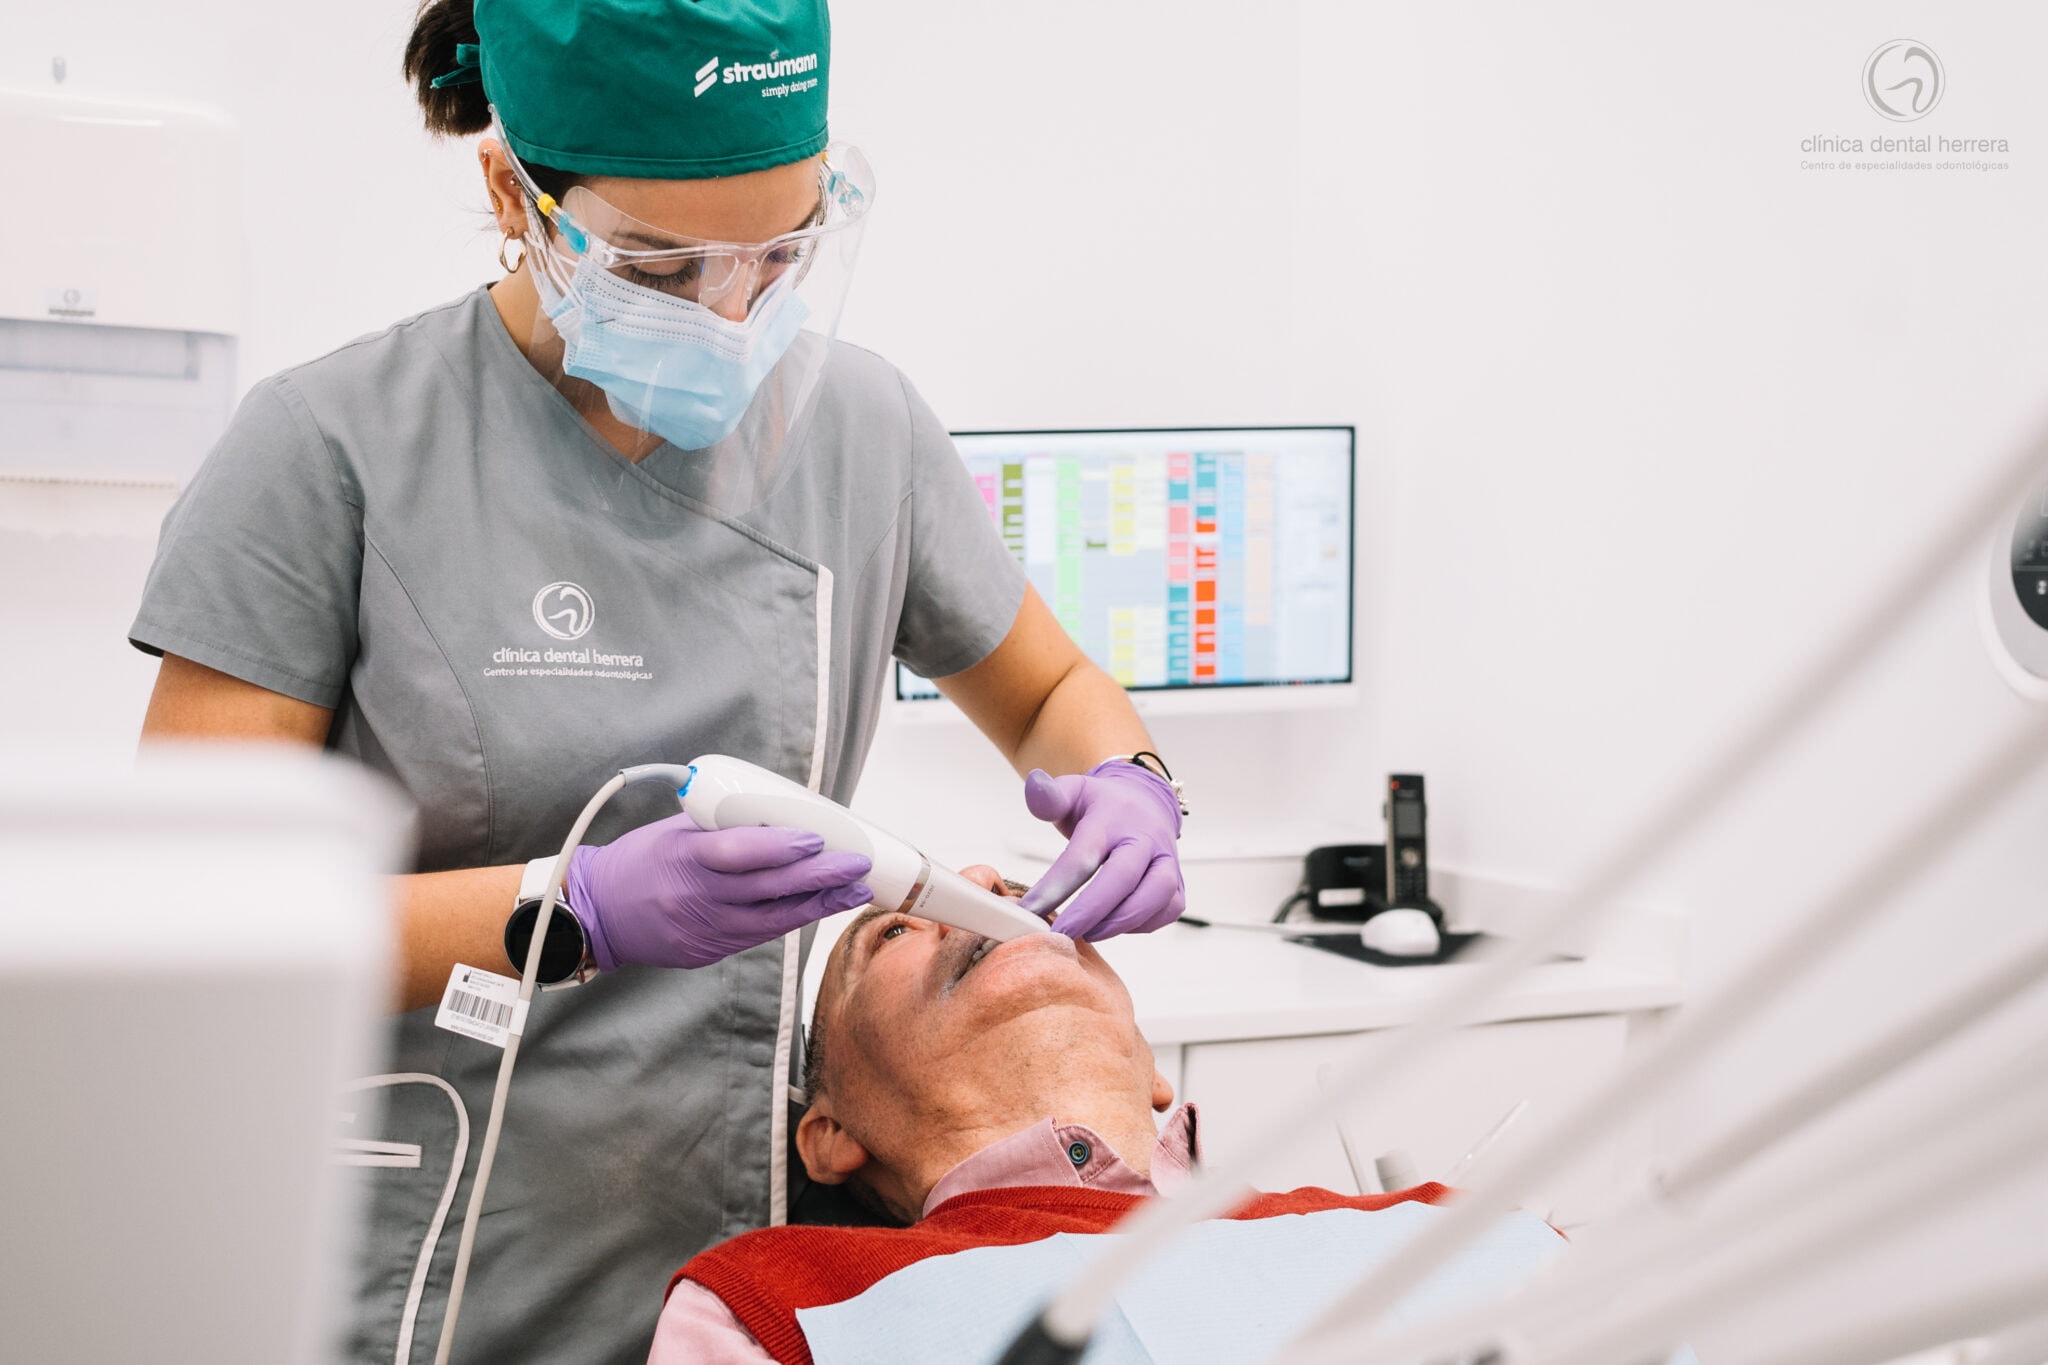 Clínica Dental Herrera perfecciona las impresiones digitales con la dotación de nuevos-escáneres-intraorales